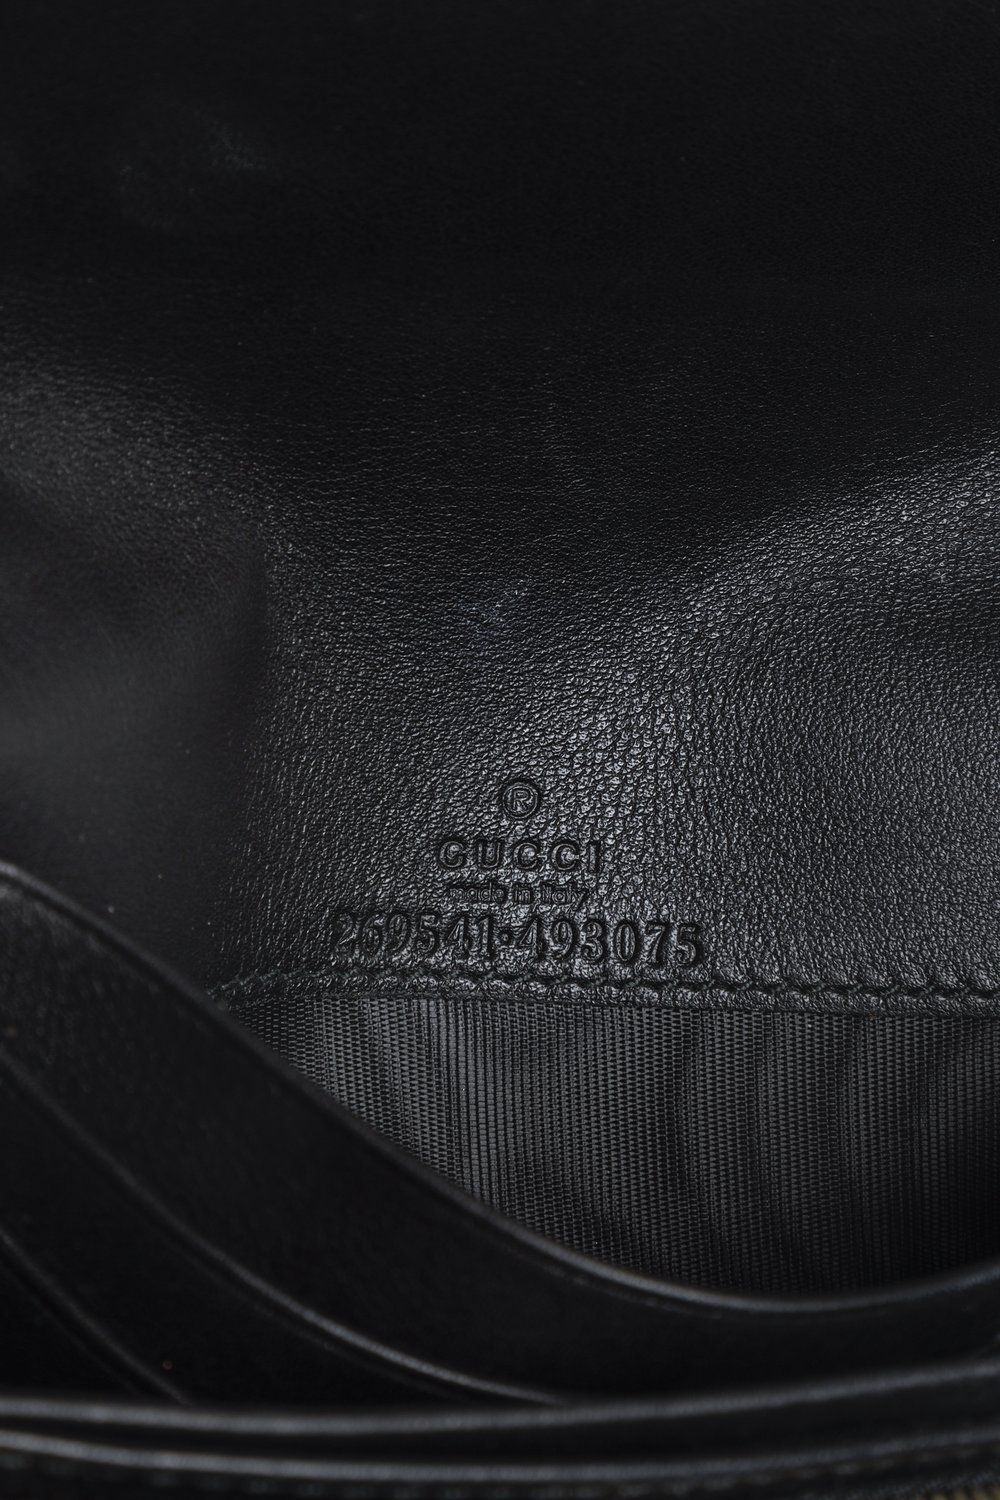 Gucci Guccissima Black Leather Chain Wallet — BLOGGER ARMOIRE